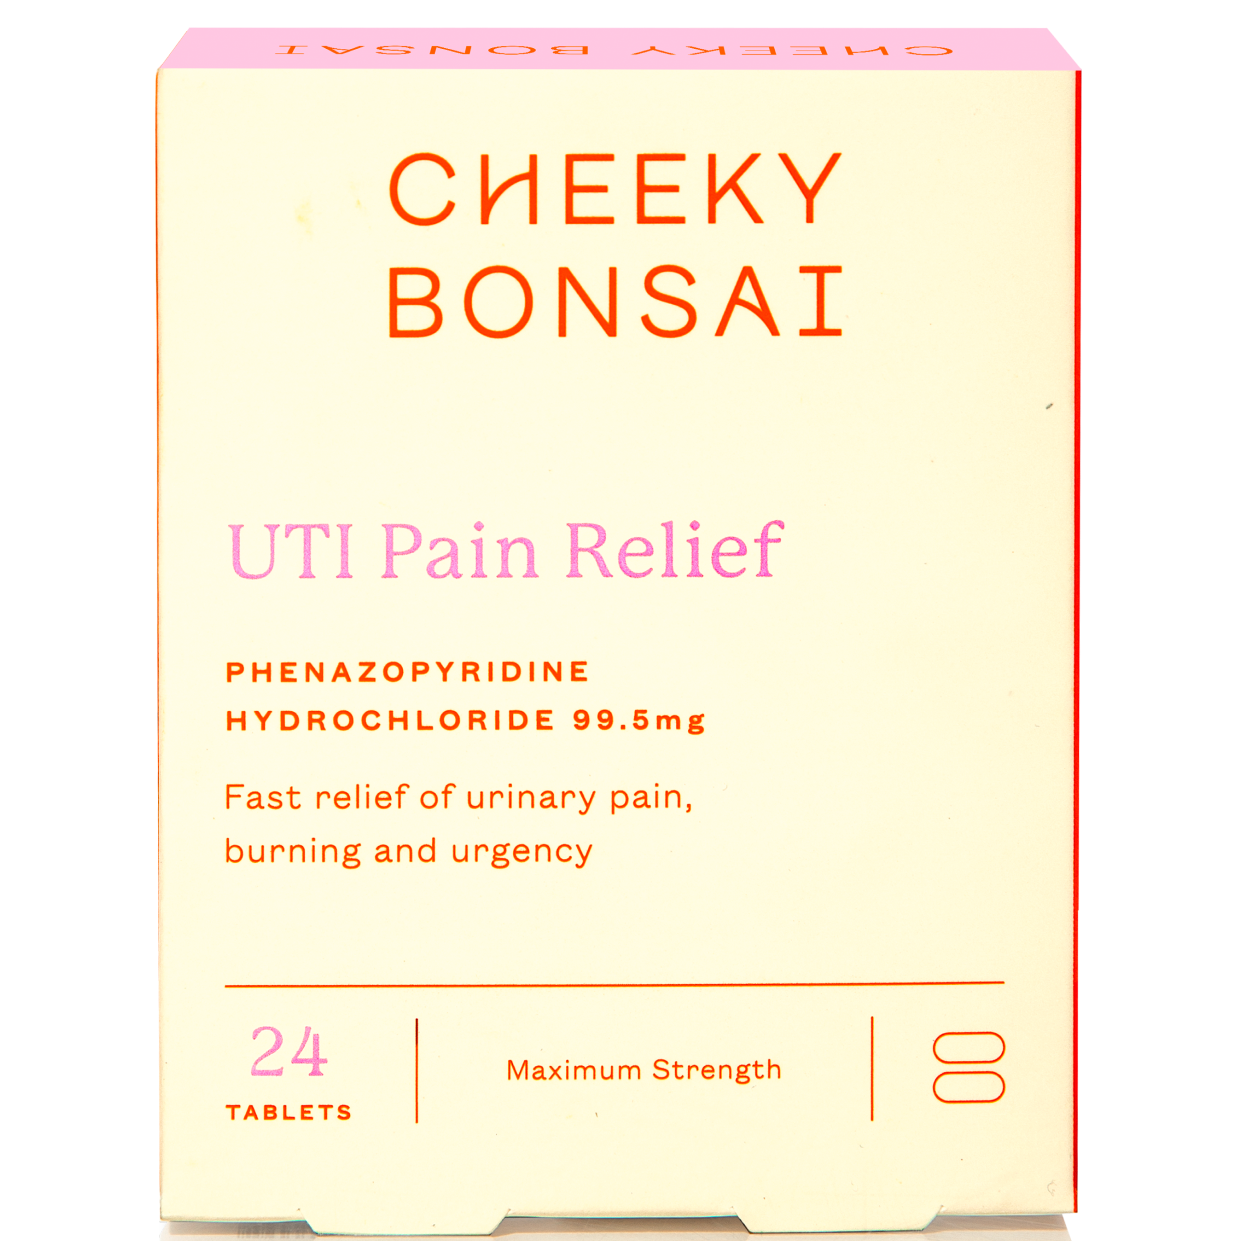 UTI Pain Relief